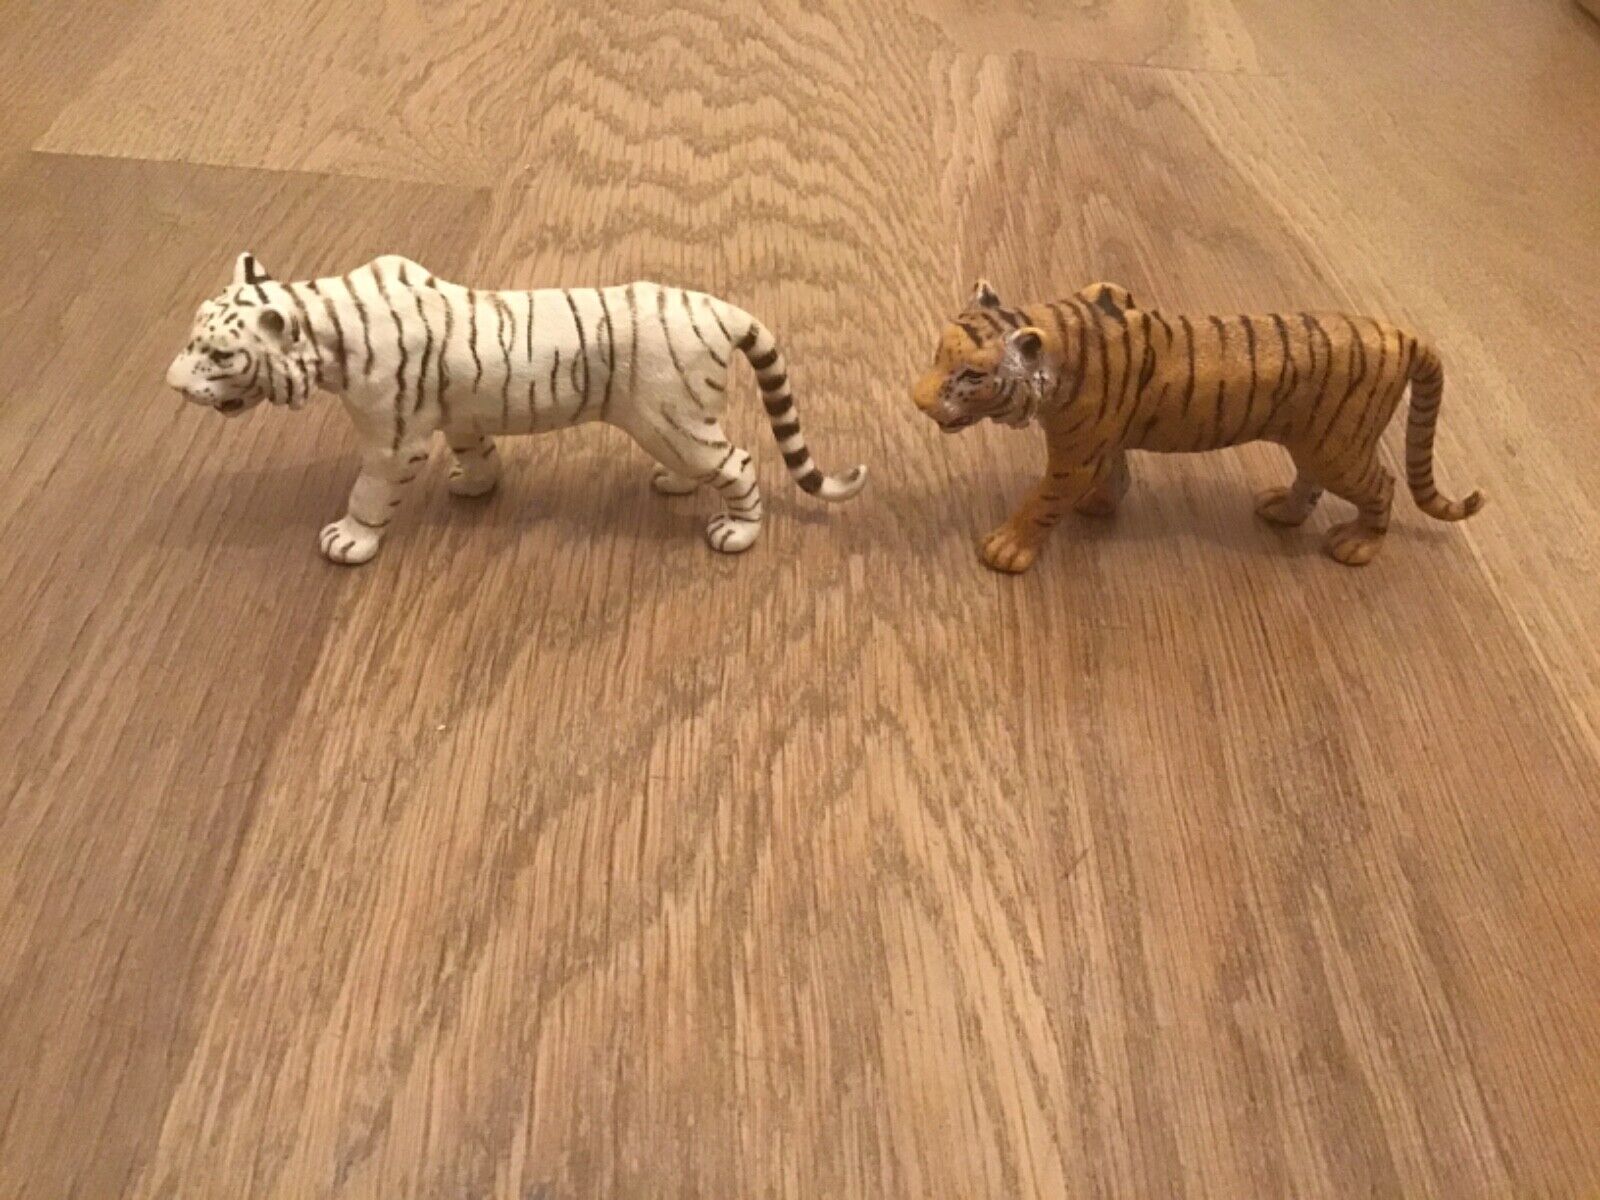 Schleich Animals: White Tiger & Bengal Tiger: 2007 & 2014